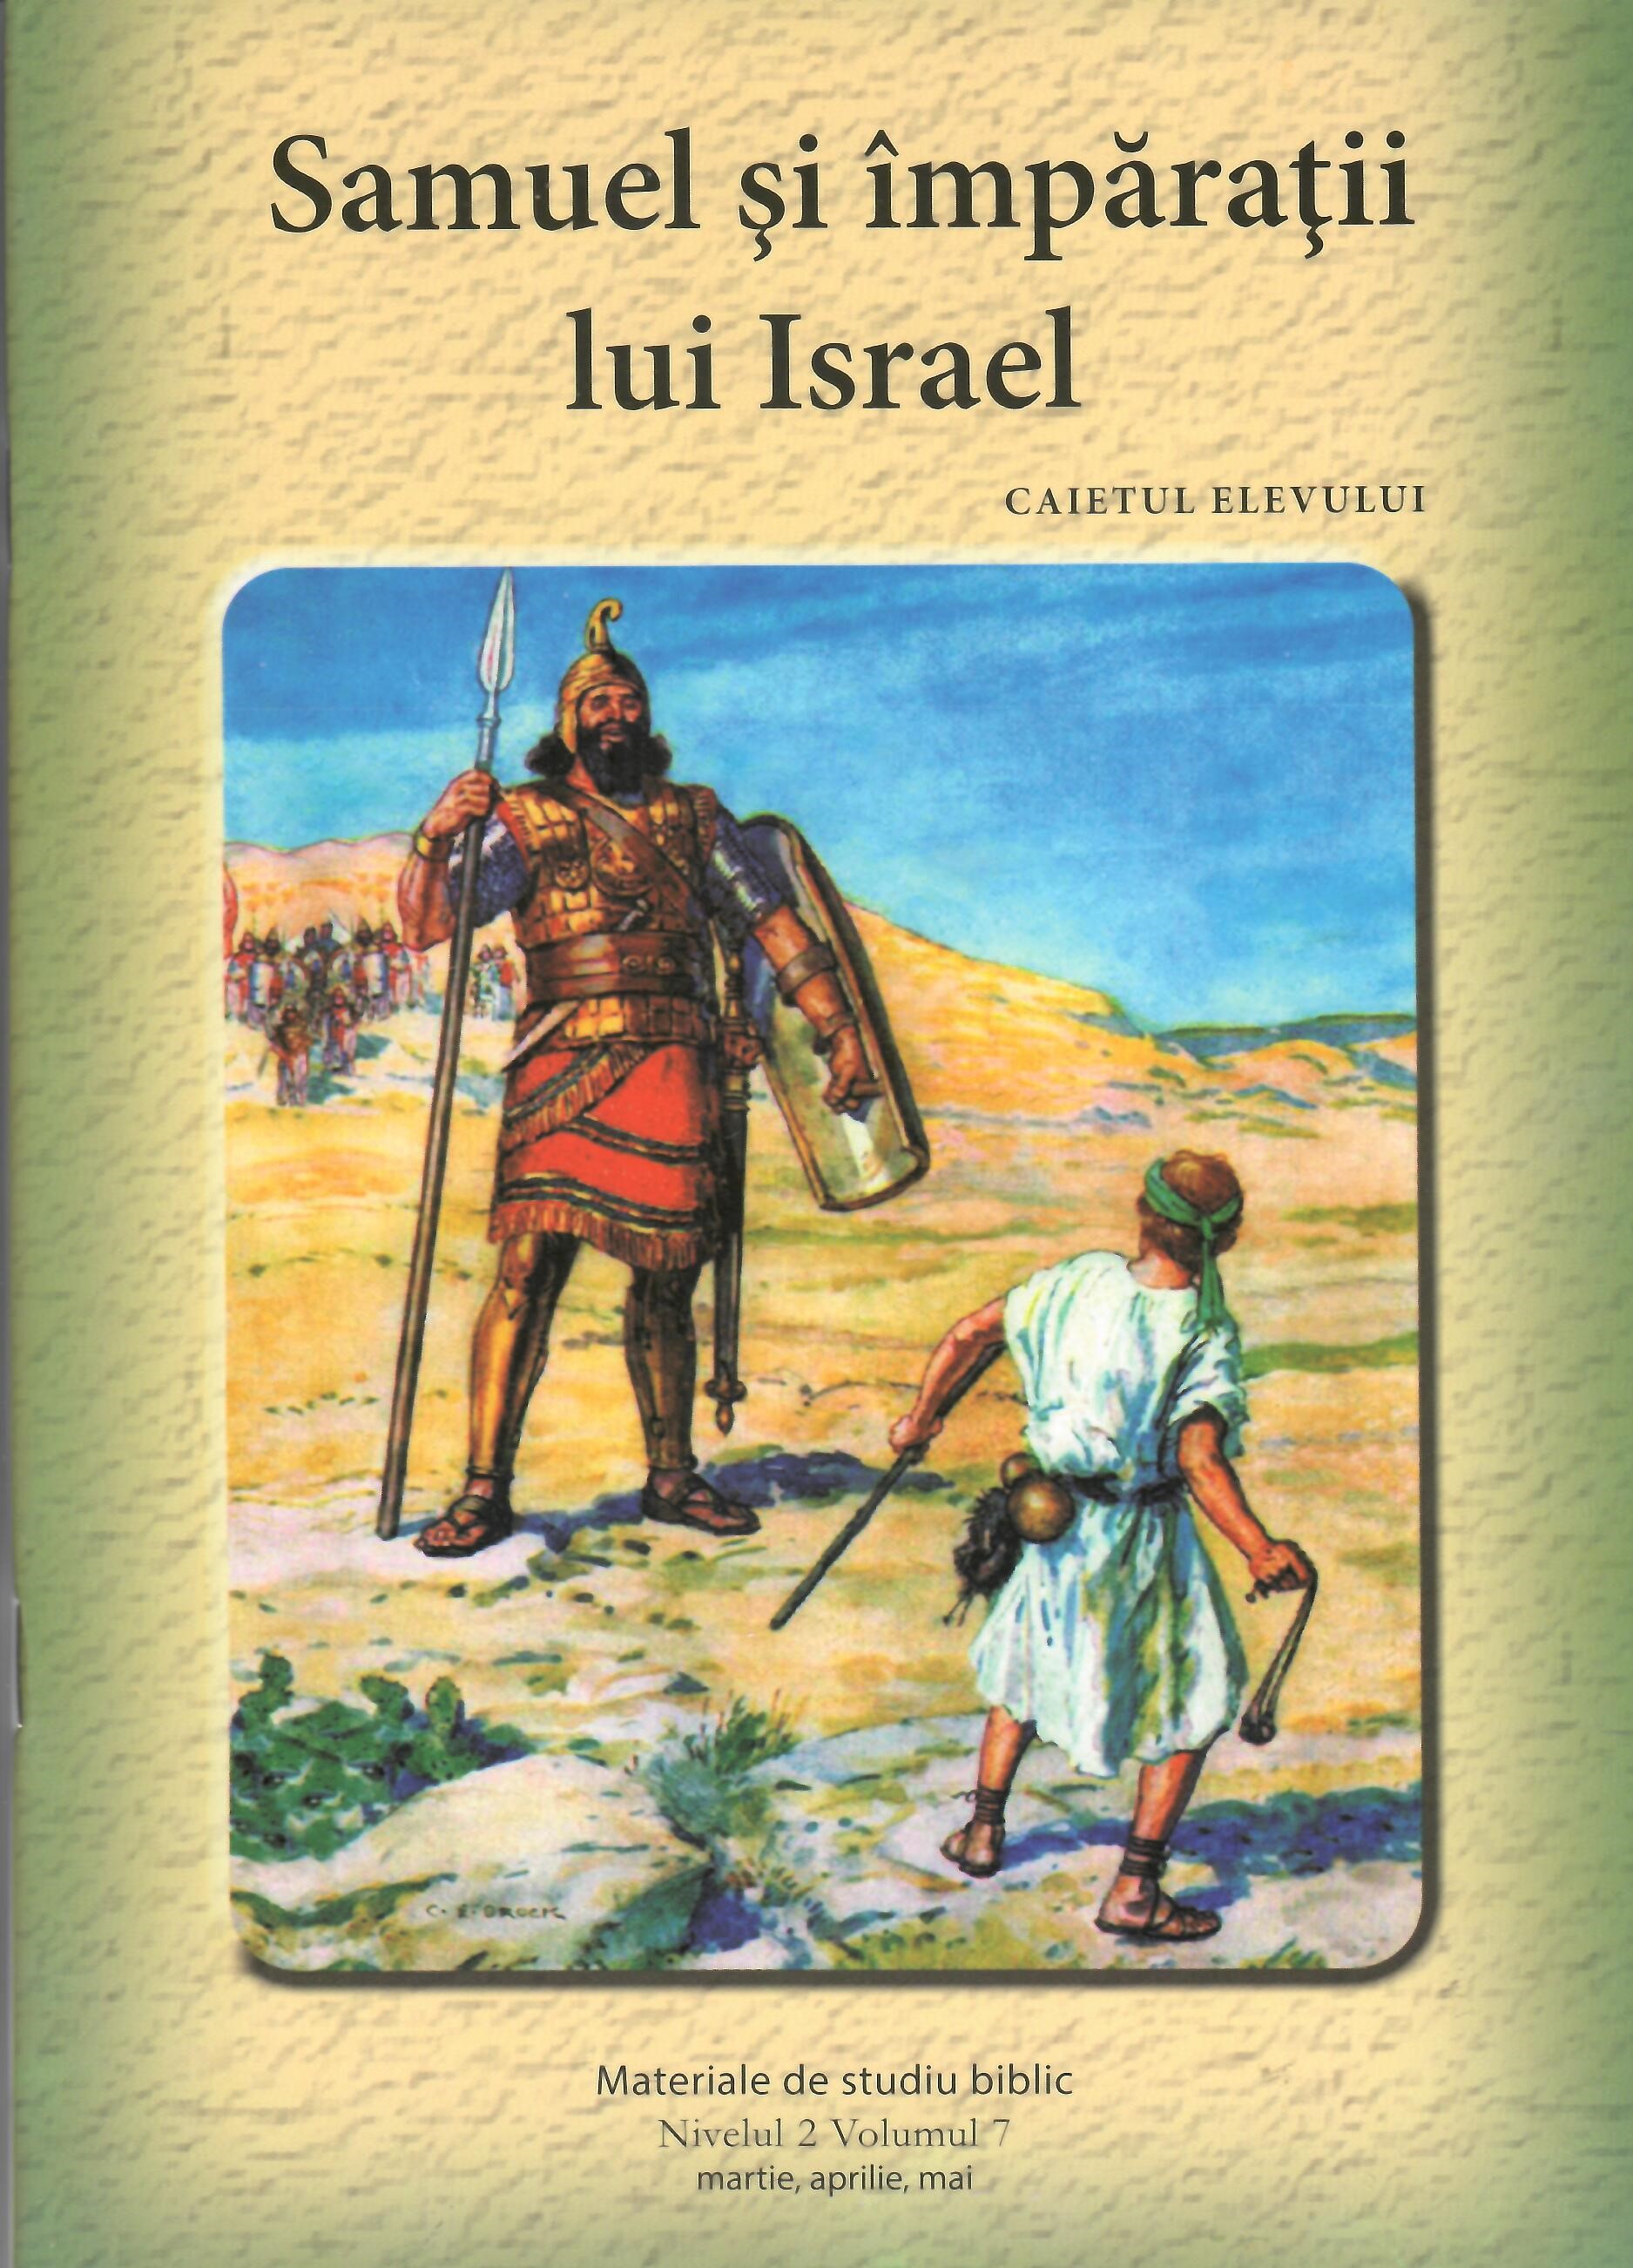 Nivelul 2 vol. 7 Samuel si imparatii lui Israel - Caietul elevului